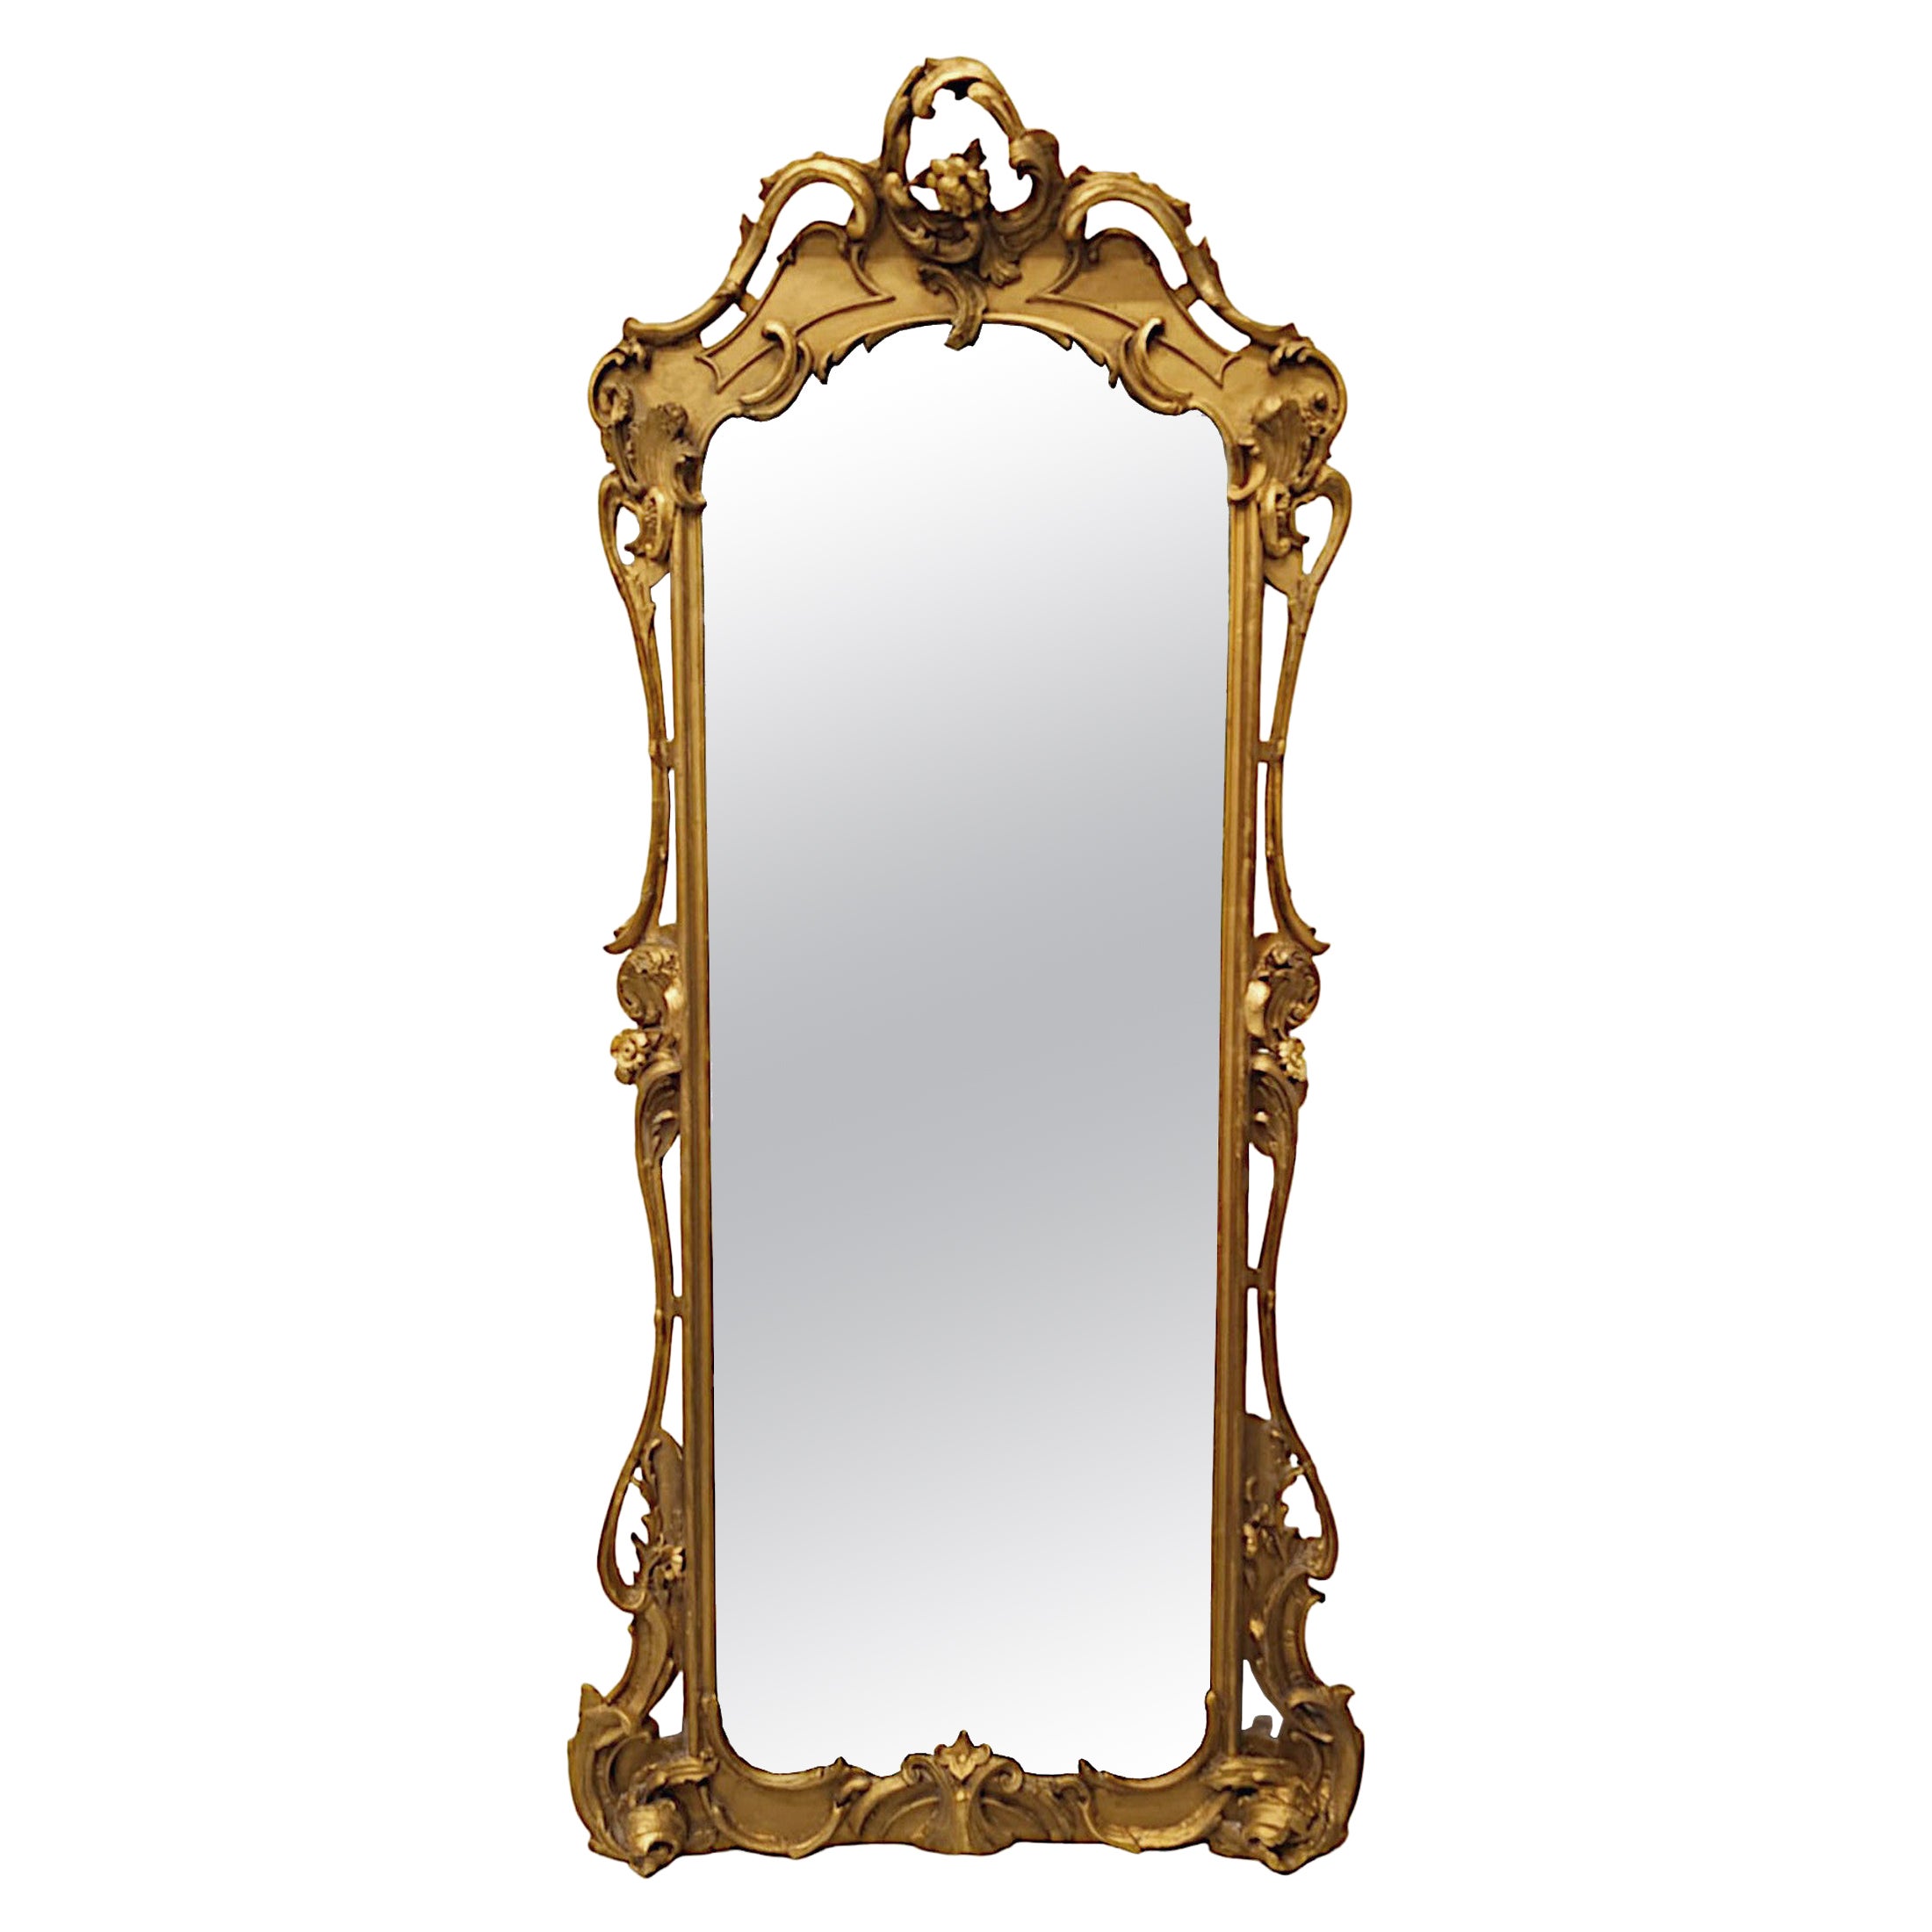 Seltener Spiegel aus Giltwood aus dem 19. Jahrhundert für den Flur oder die Garderobe